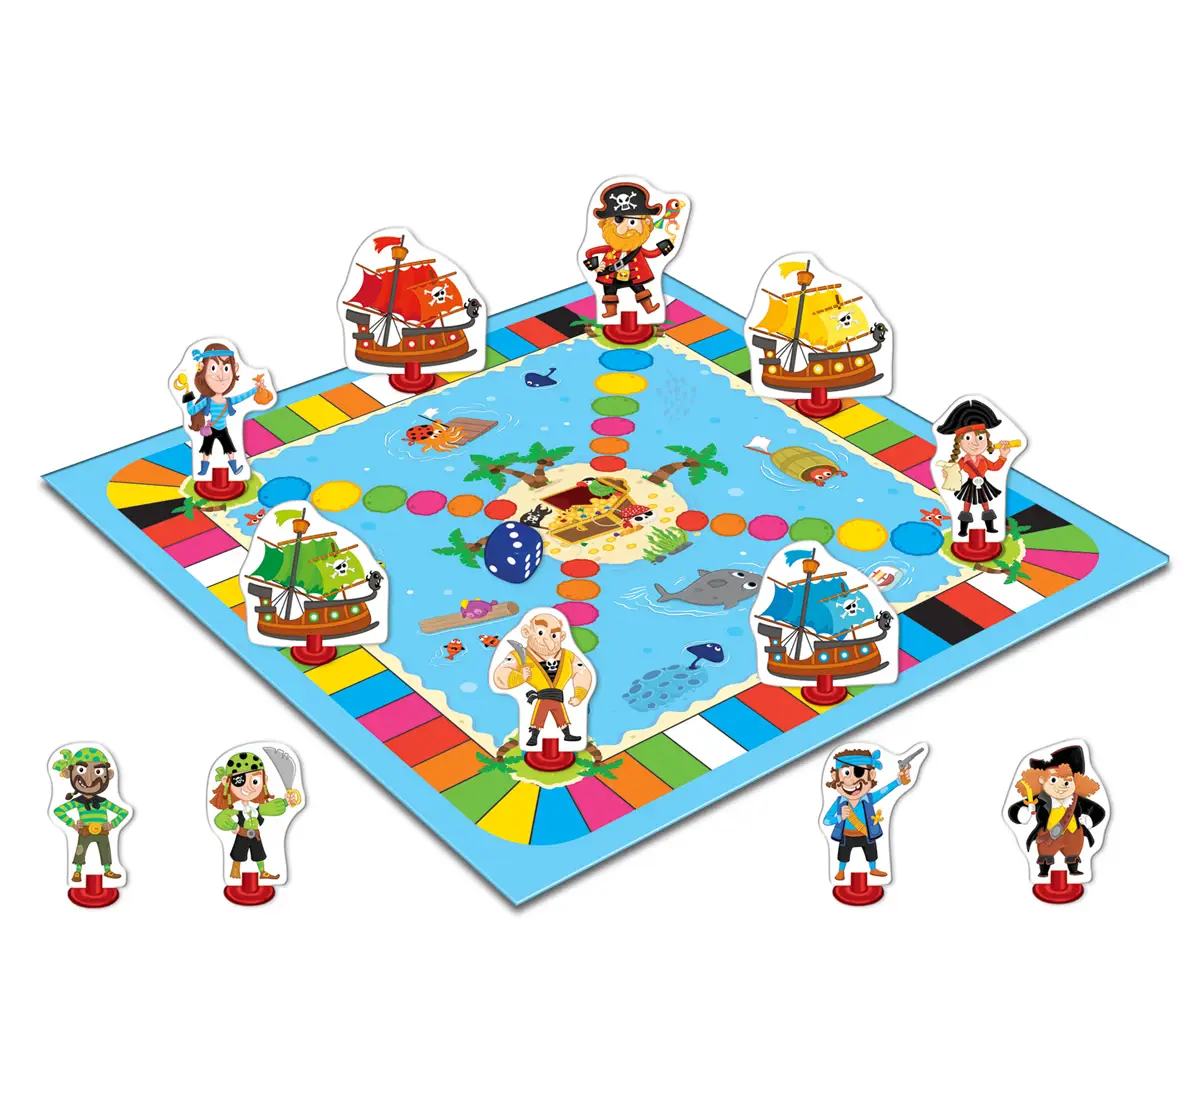 Frank Pirate Treasure Floor Puzzles Multicolor 5Y+